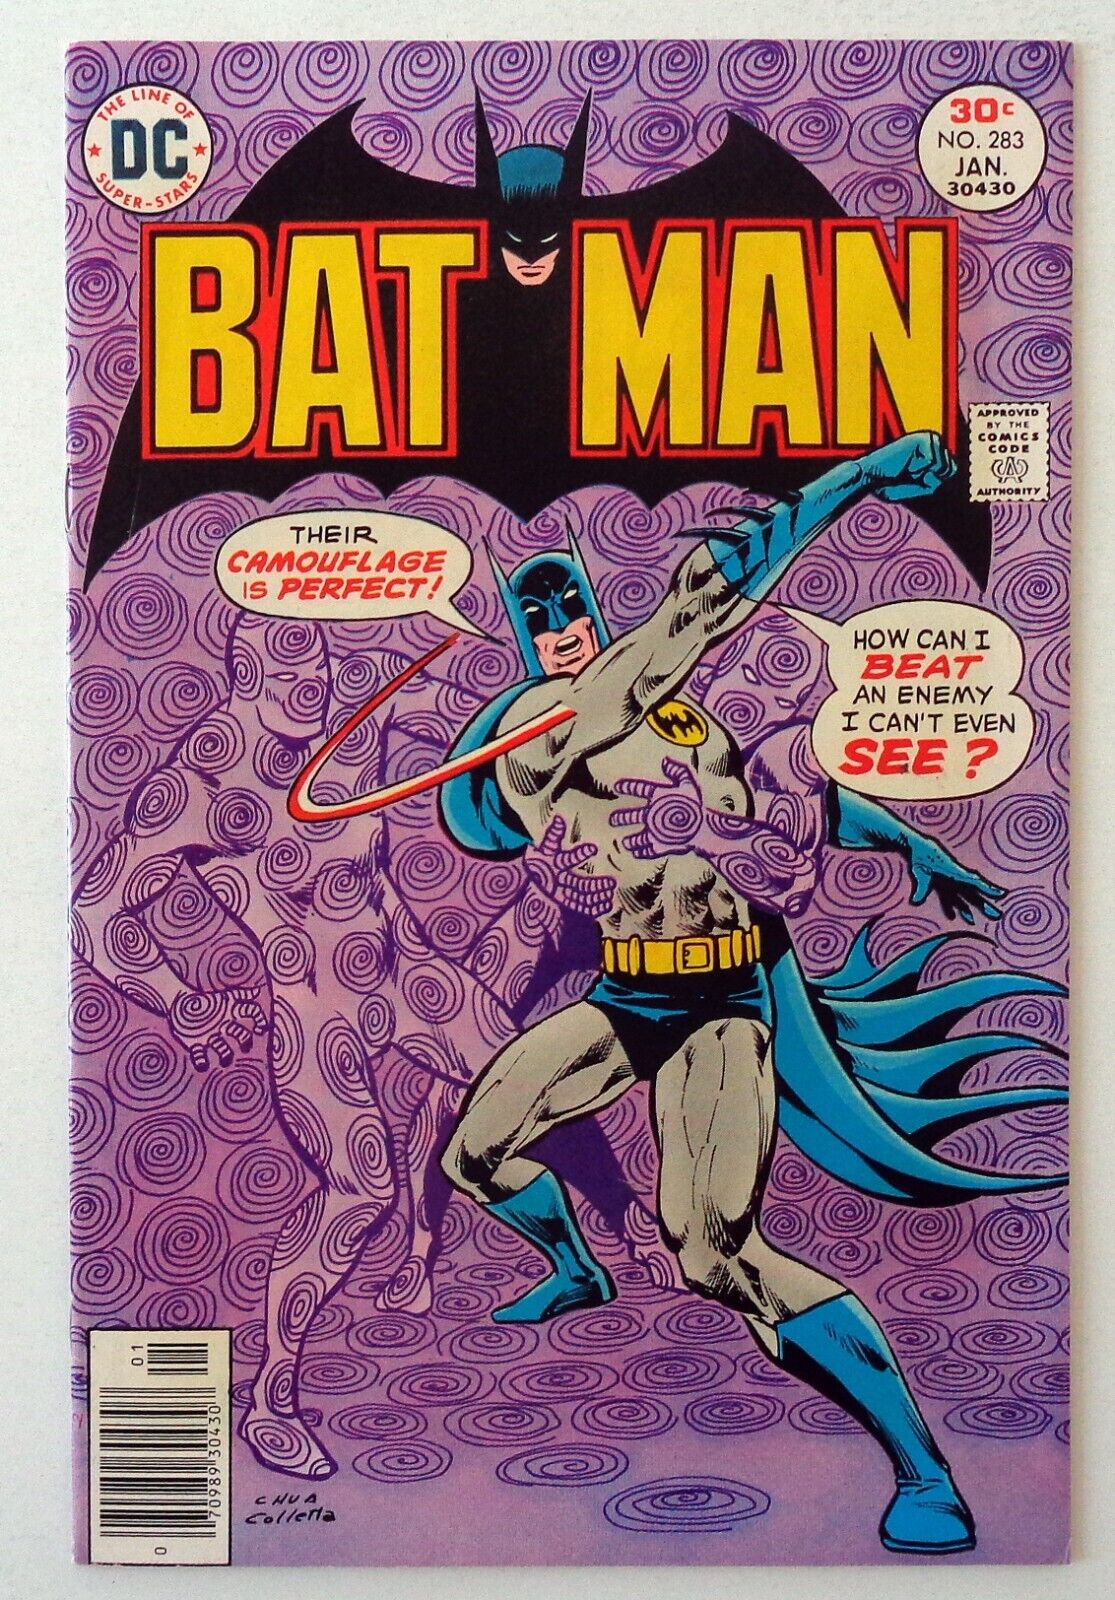 BATMAN #s 283 - 324 (DC Comics)